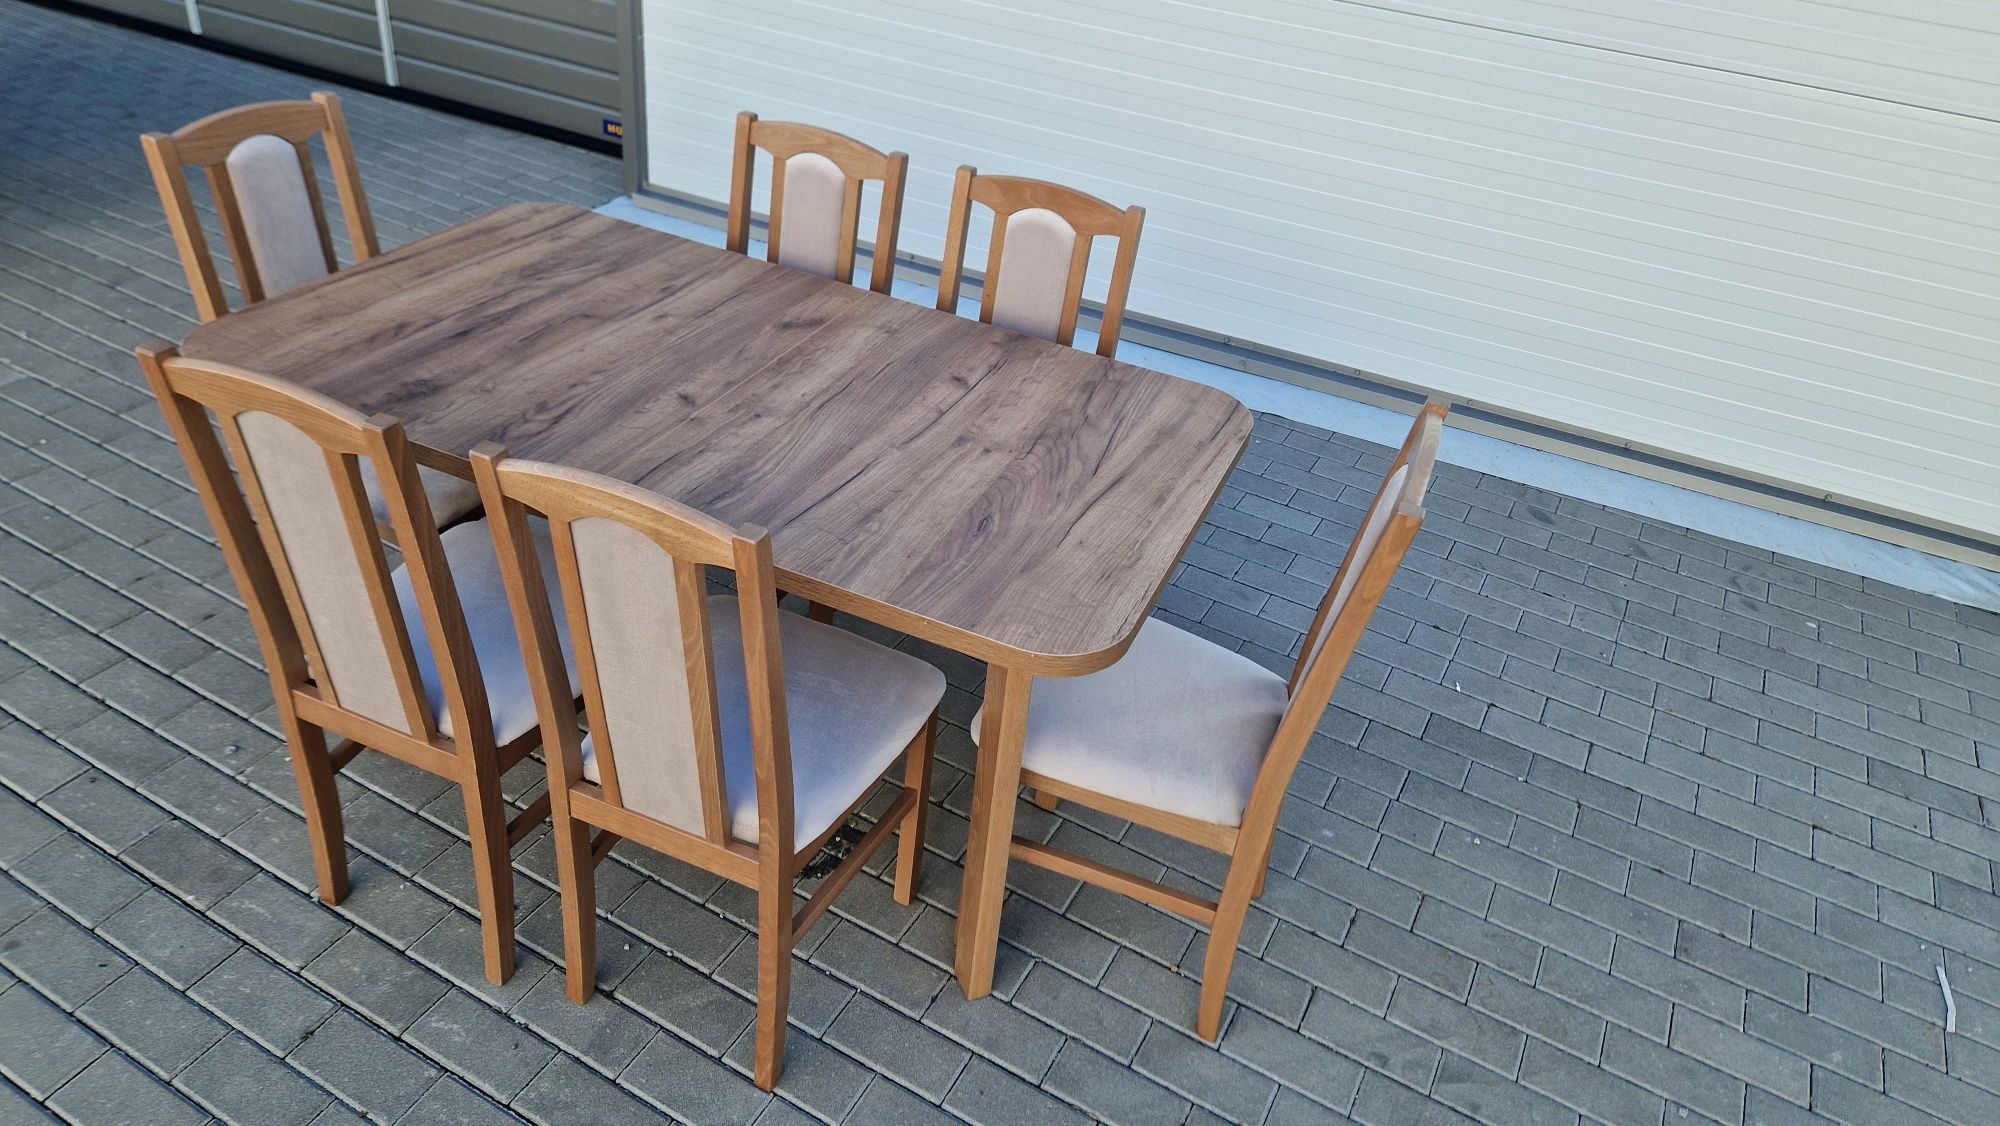 Stół 80x140/180 + 6 krzeseł, nowe, ORZECH JASNY + LATTE, dostawa PL